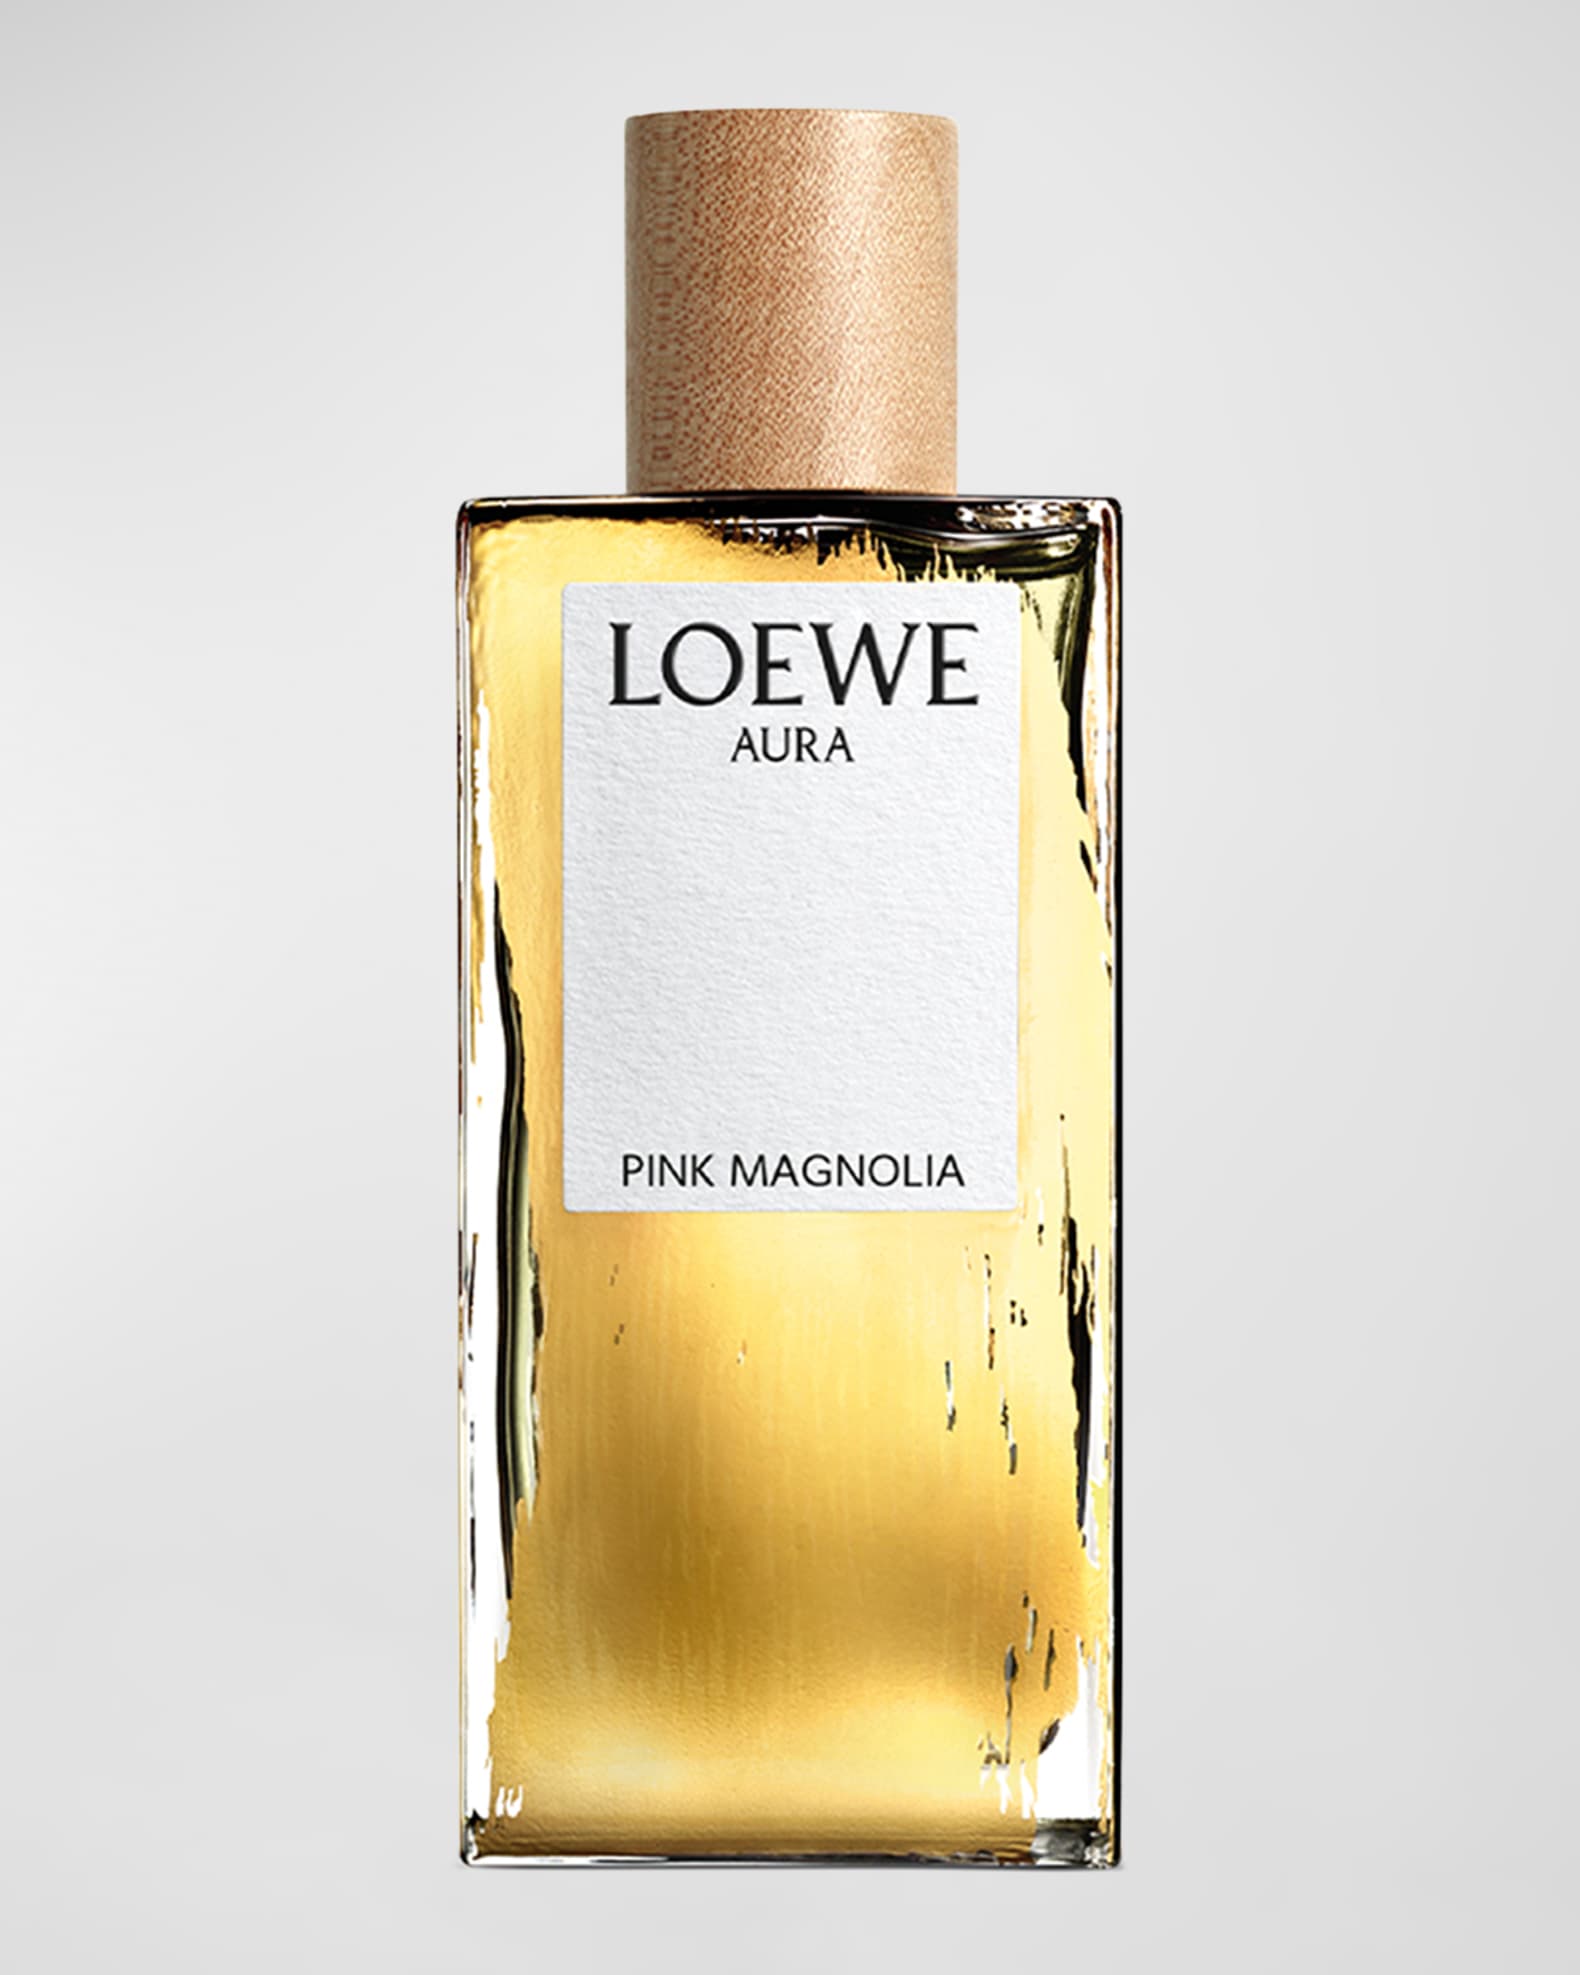 100% Genuine Louis Vuitton Dans La Peau Eau De Parfum Spray 2ML